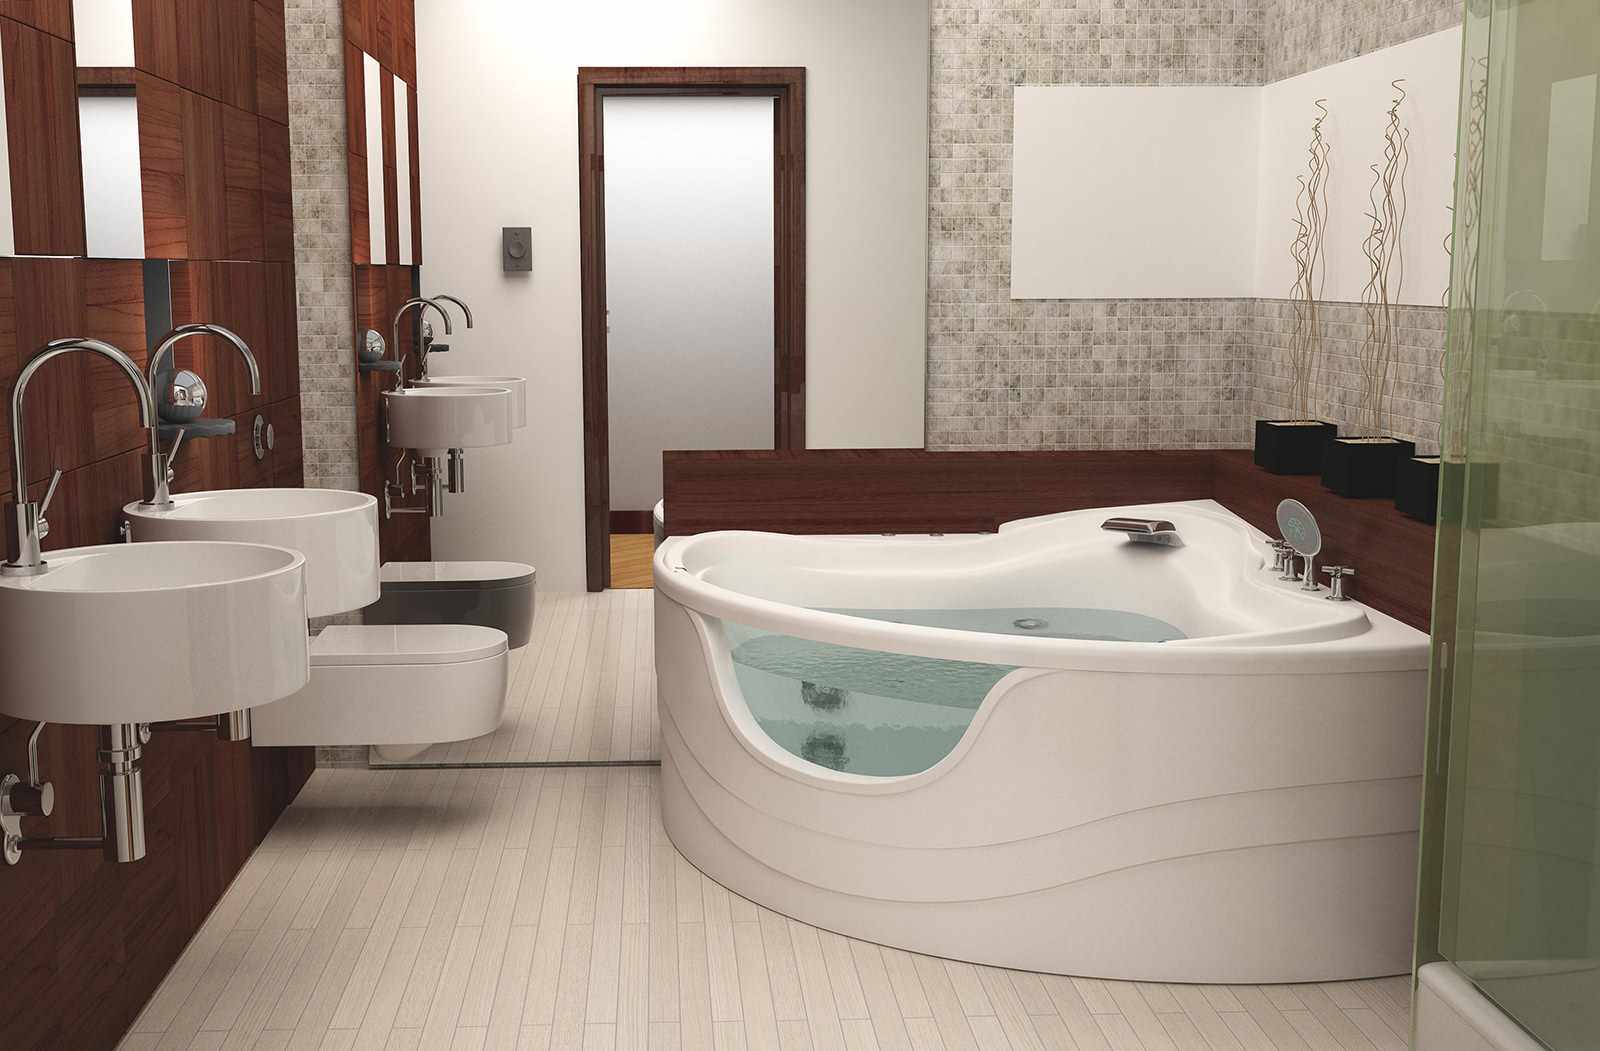 phiên bản thiết kế khác thường của phòng tắm với bồn tắm góc